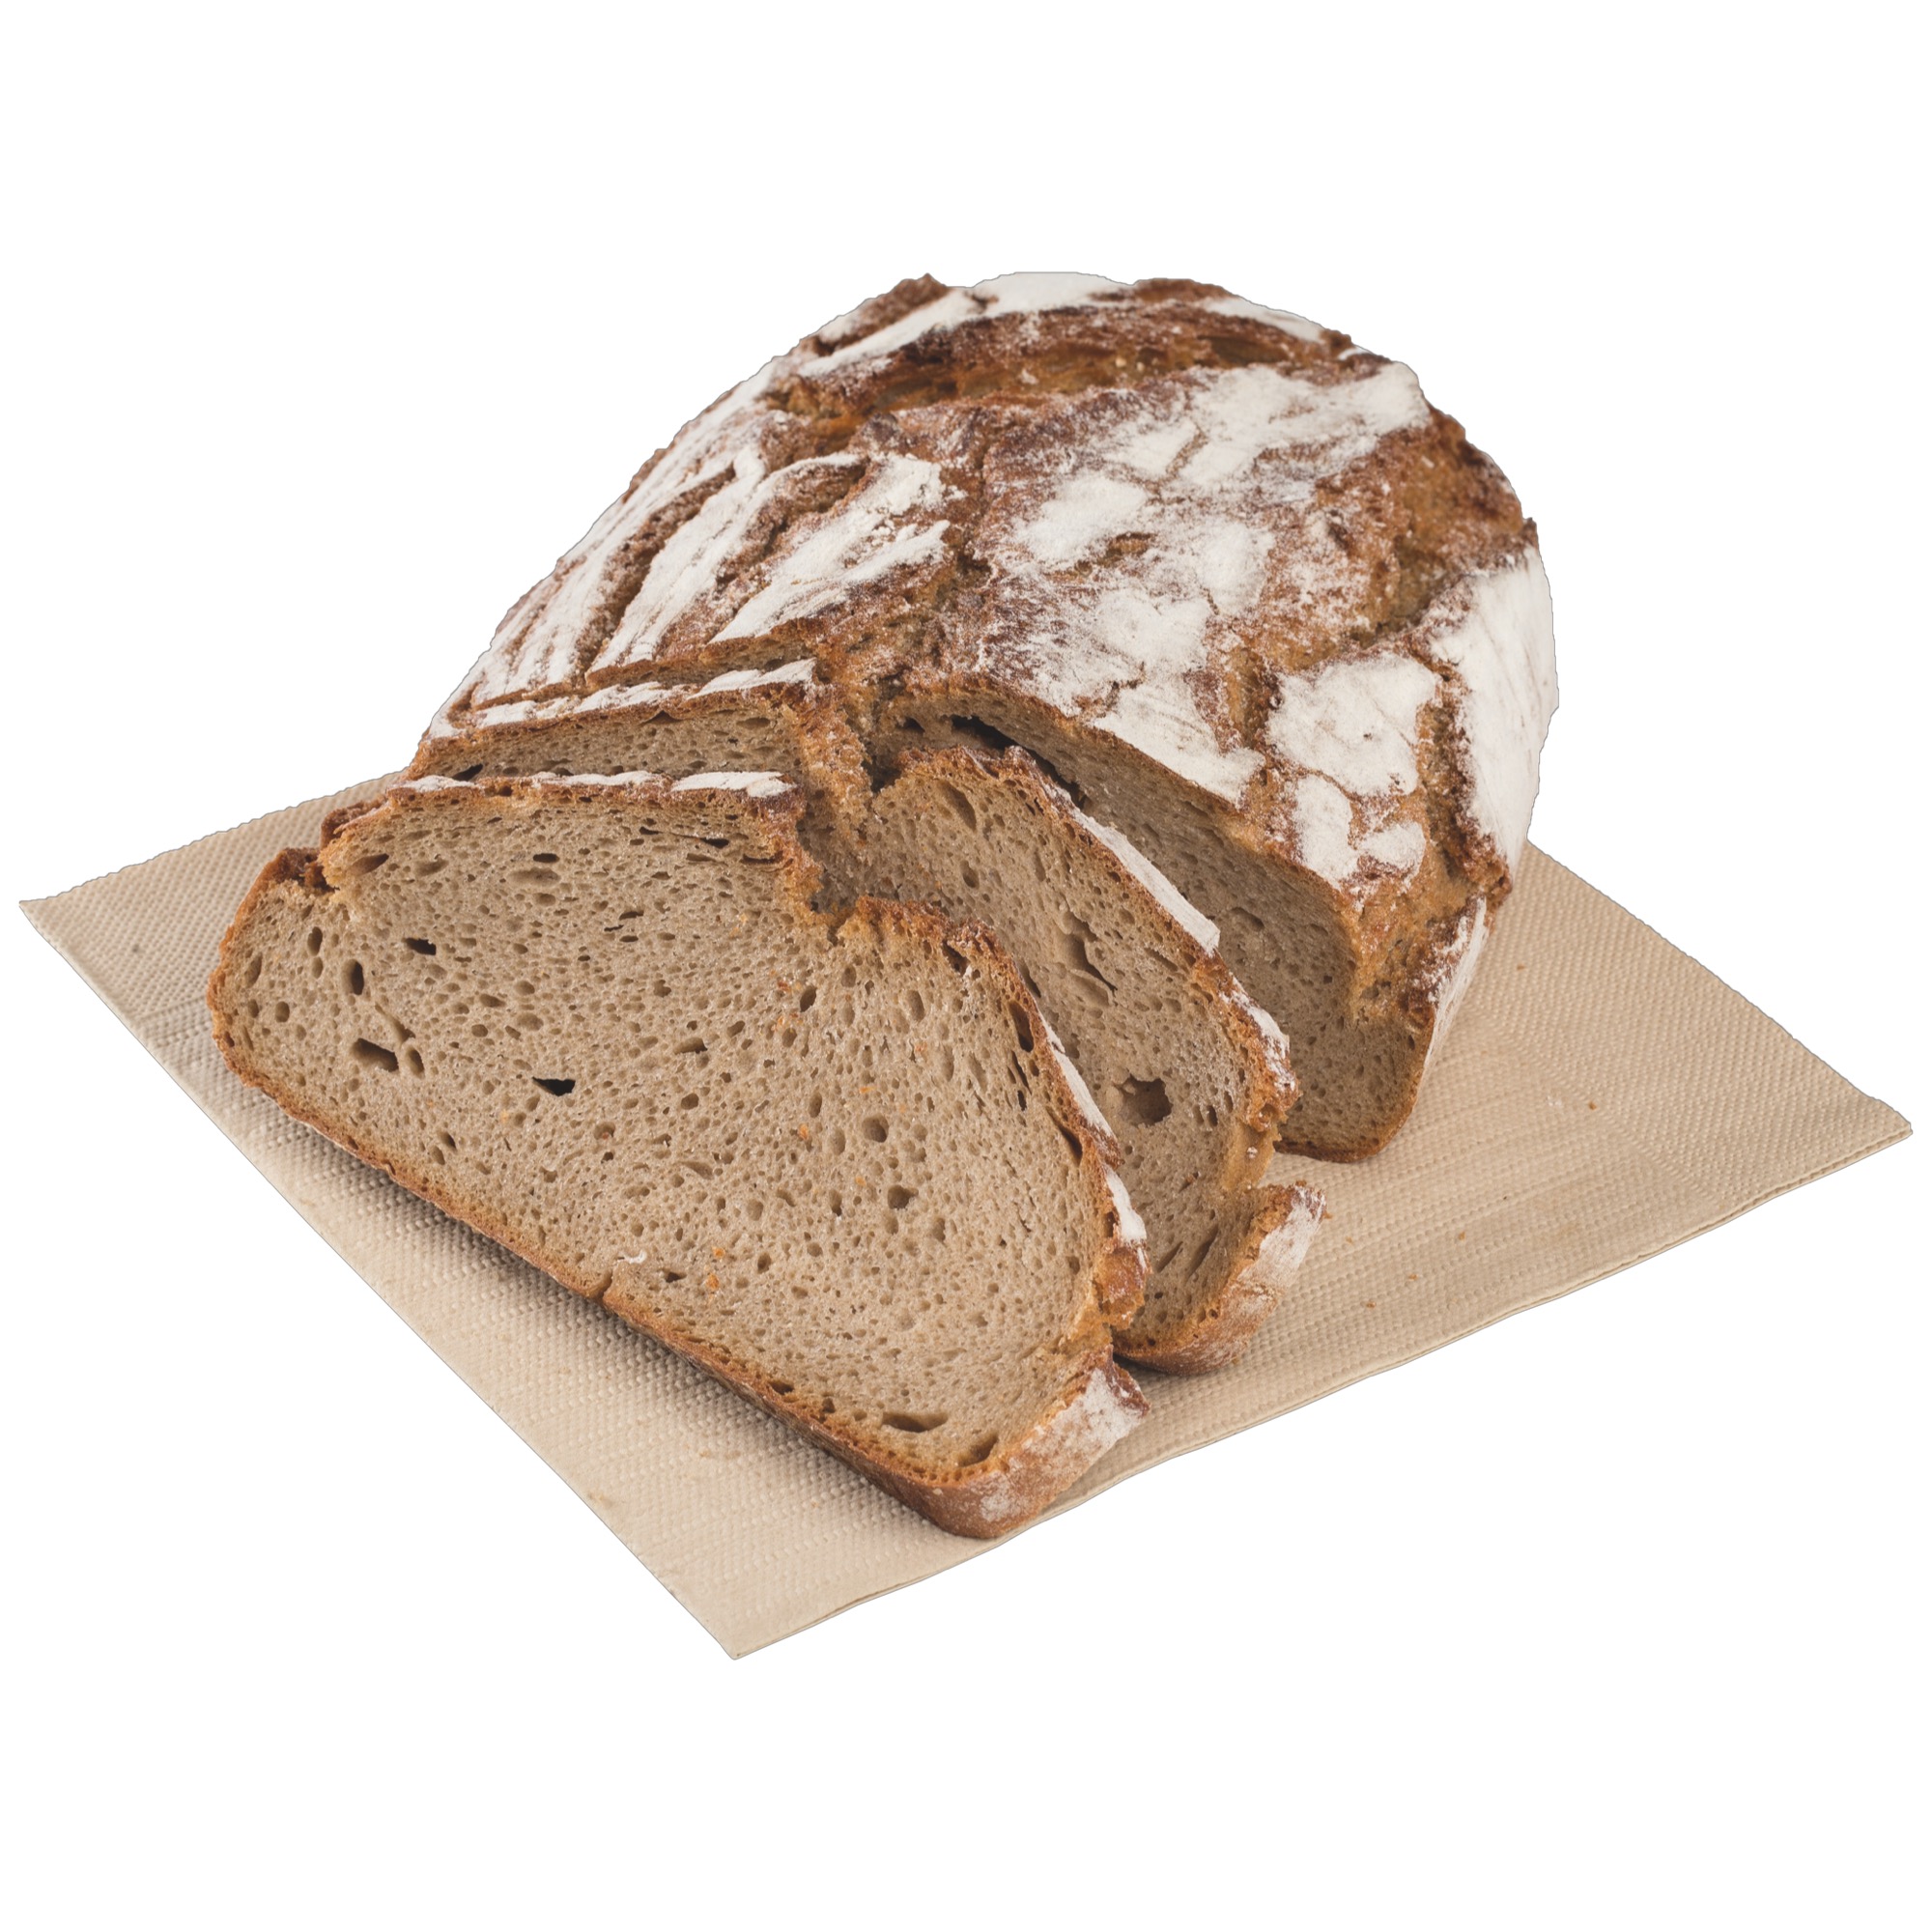 Anker Krustenbrot chlieb HGB mraz. 1kg